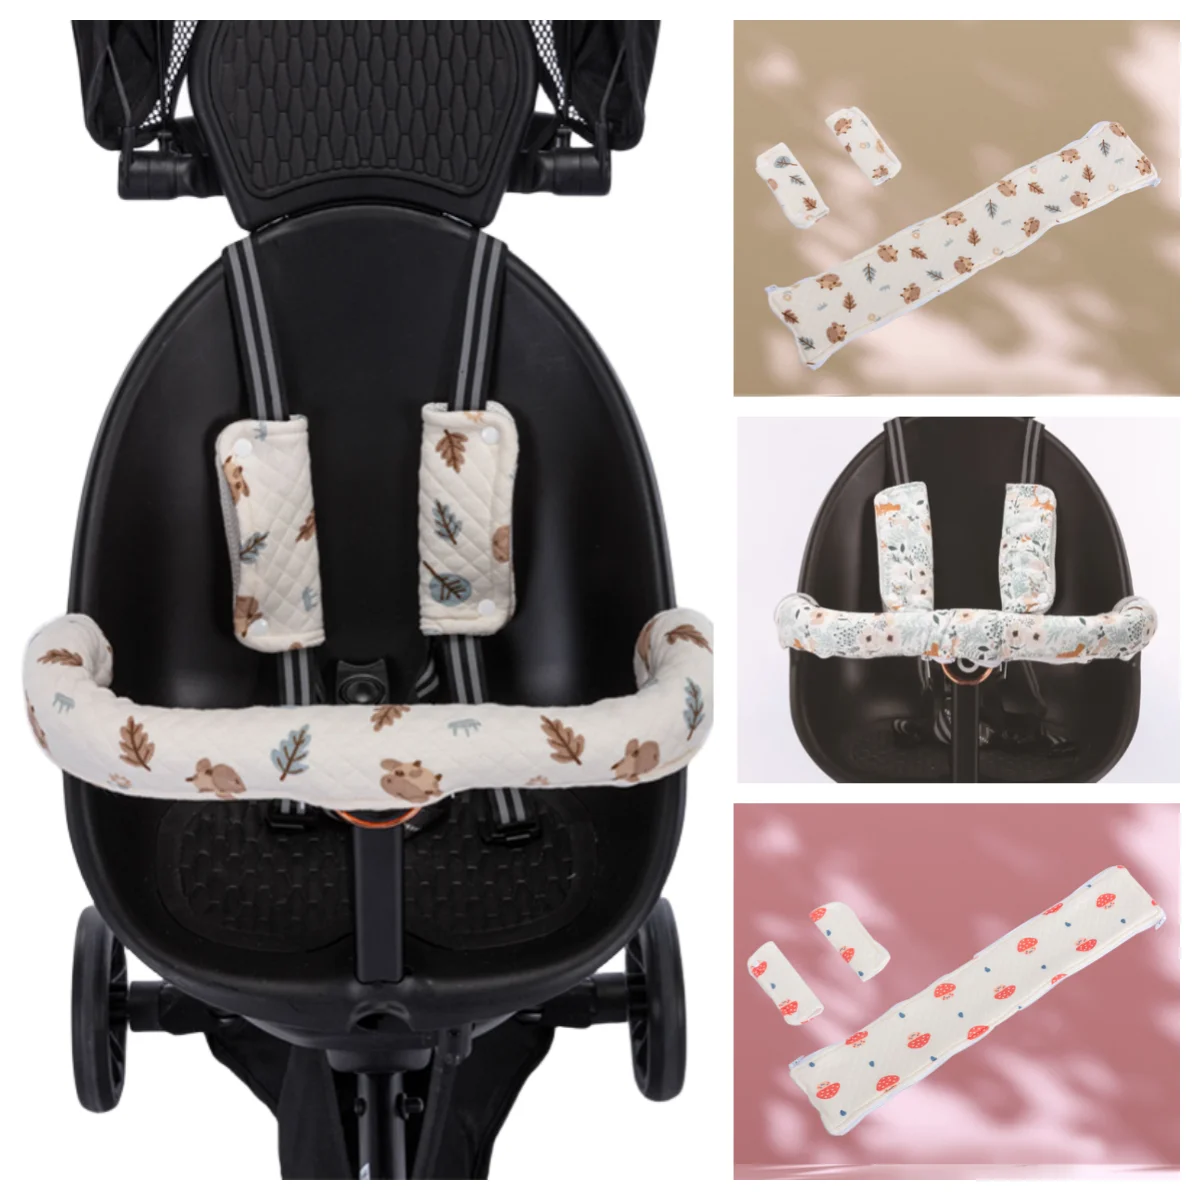 

Stroller Armrest Cover Baby Stroller Shoulder Armrest Cover Shock-Absorbing Warm Cotton Baby Stroller Accessories